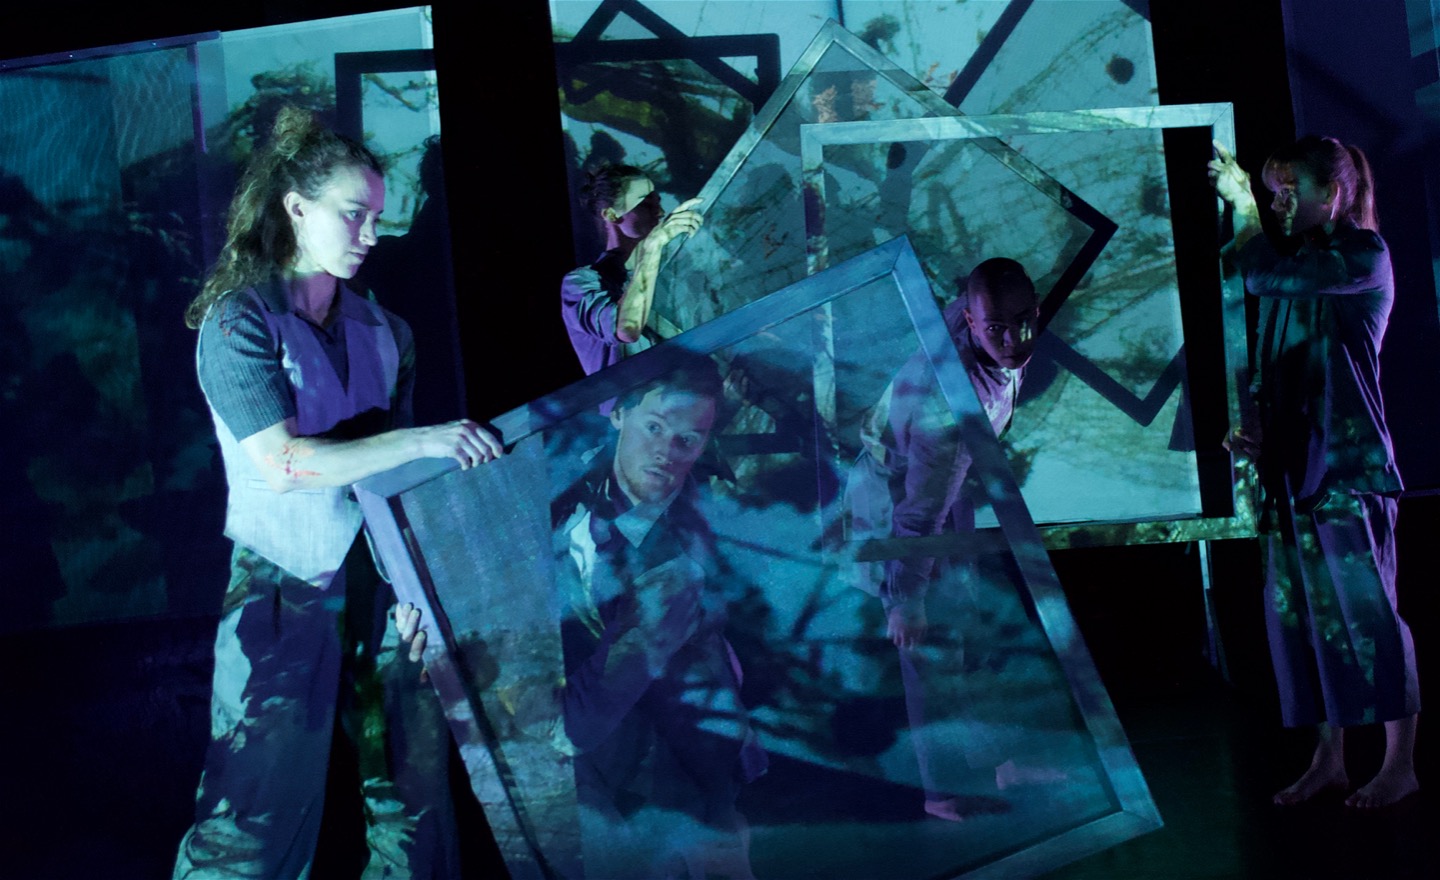 Fem dansare rör sig med eller mellan 1x1 m stora ramar i en blå-lila projektions- o ljusmiljö